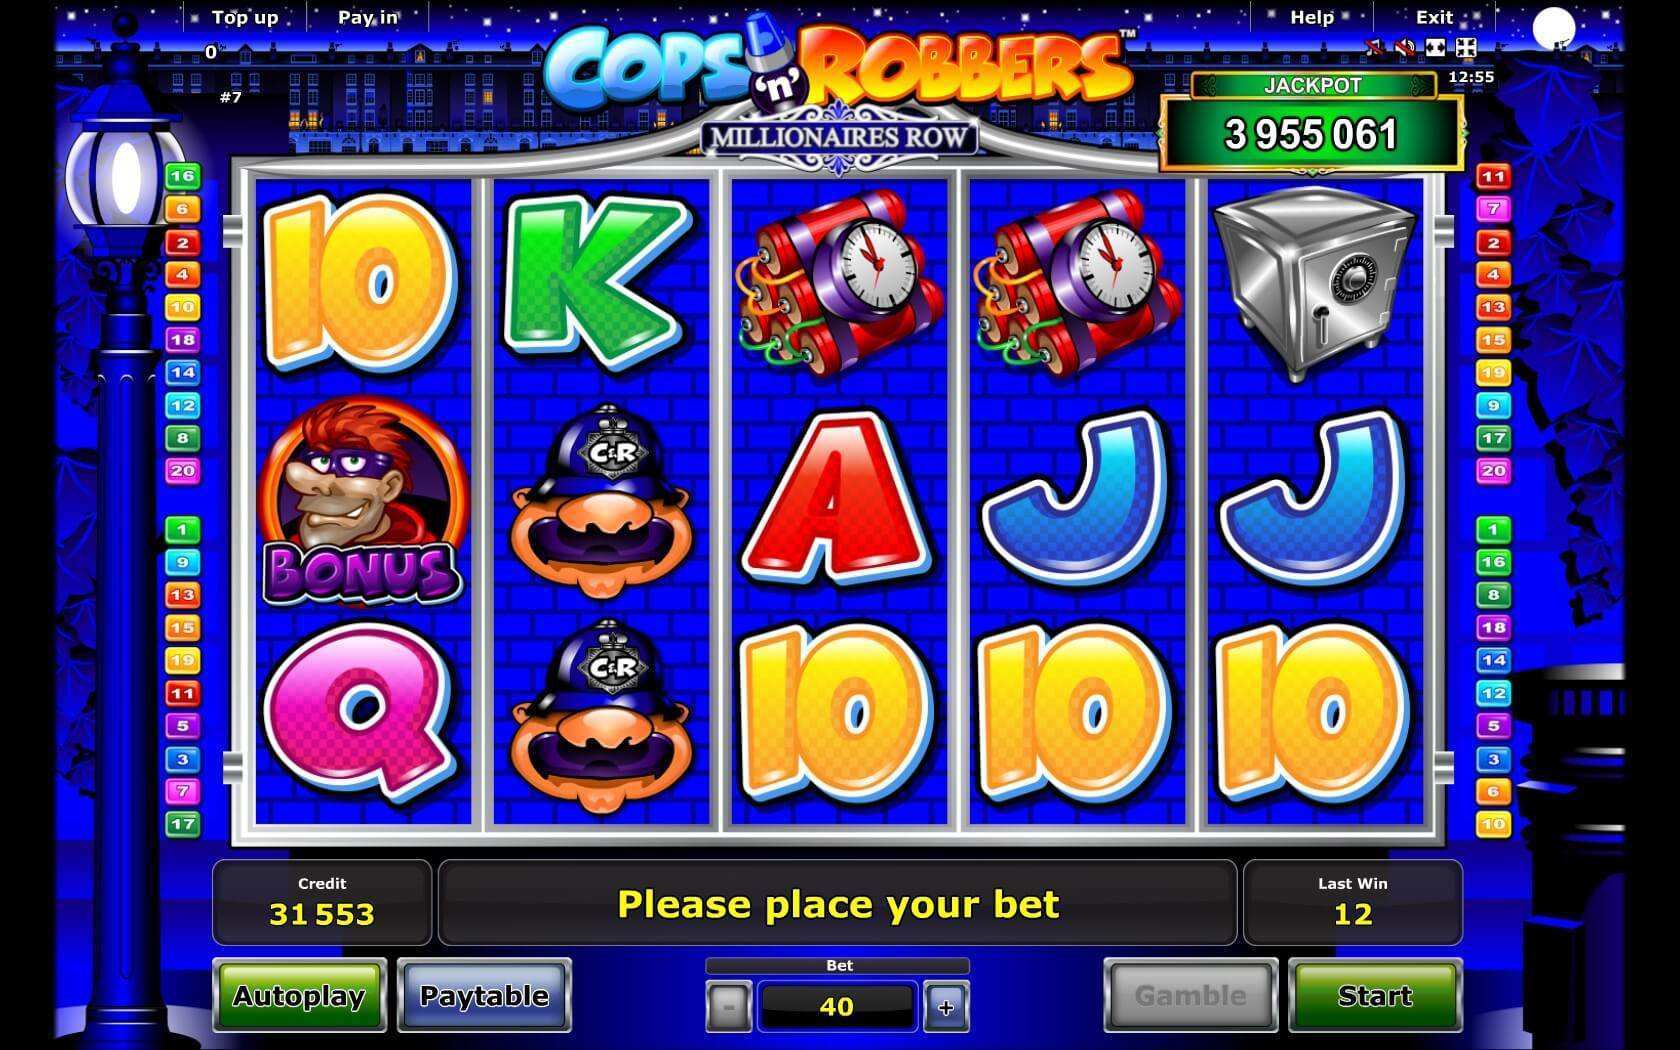 Cops ‘n’ Robbers Millionaires Slot